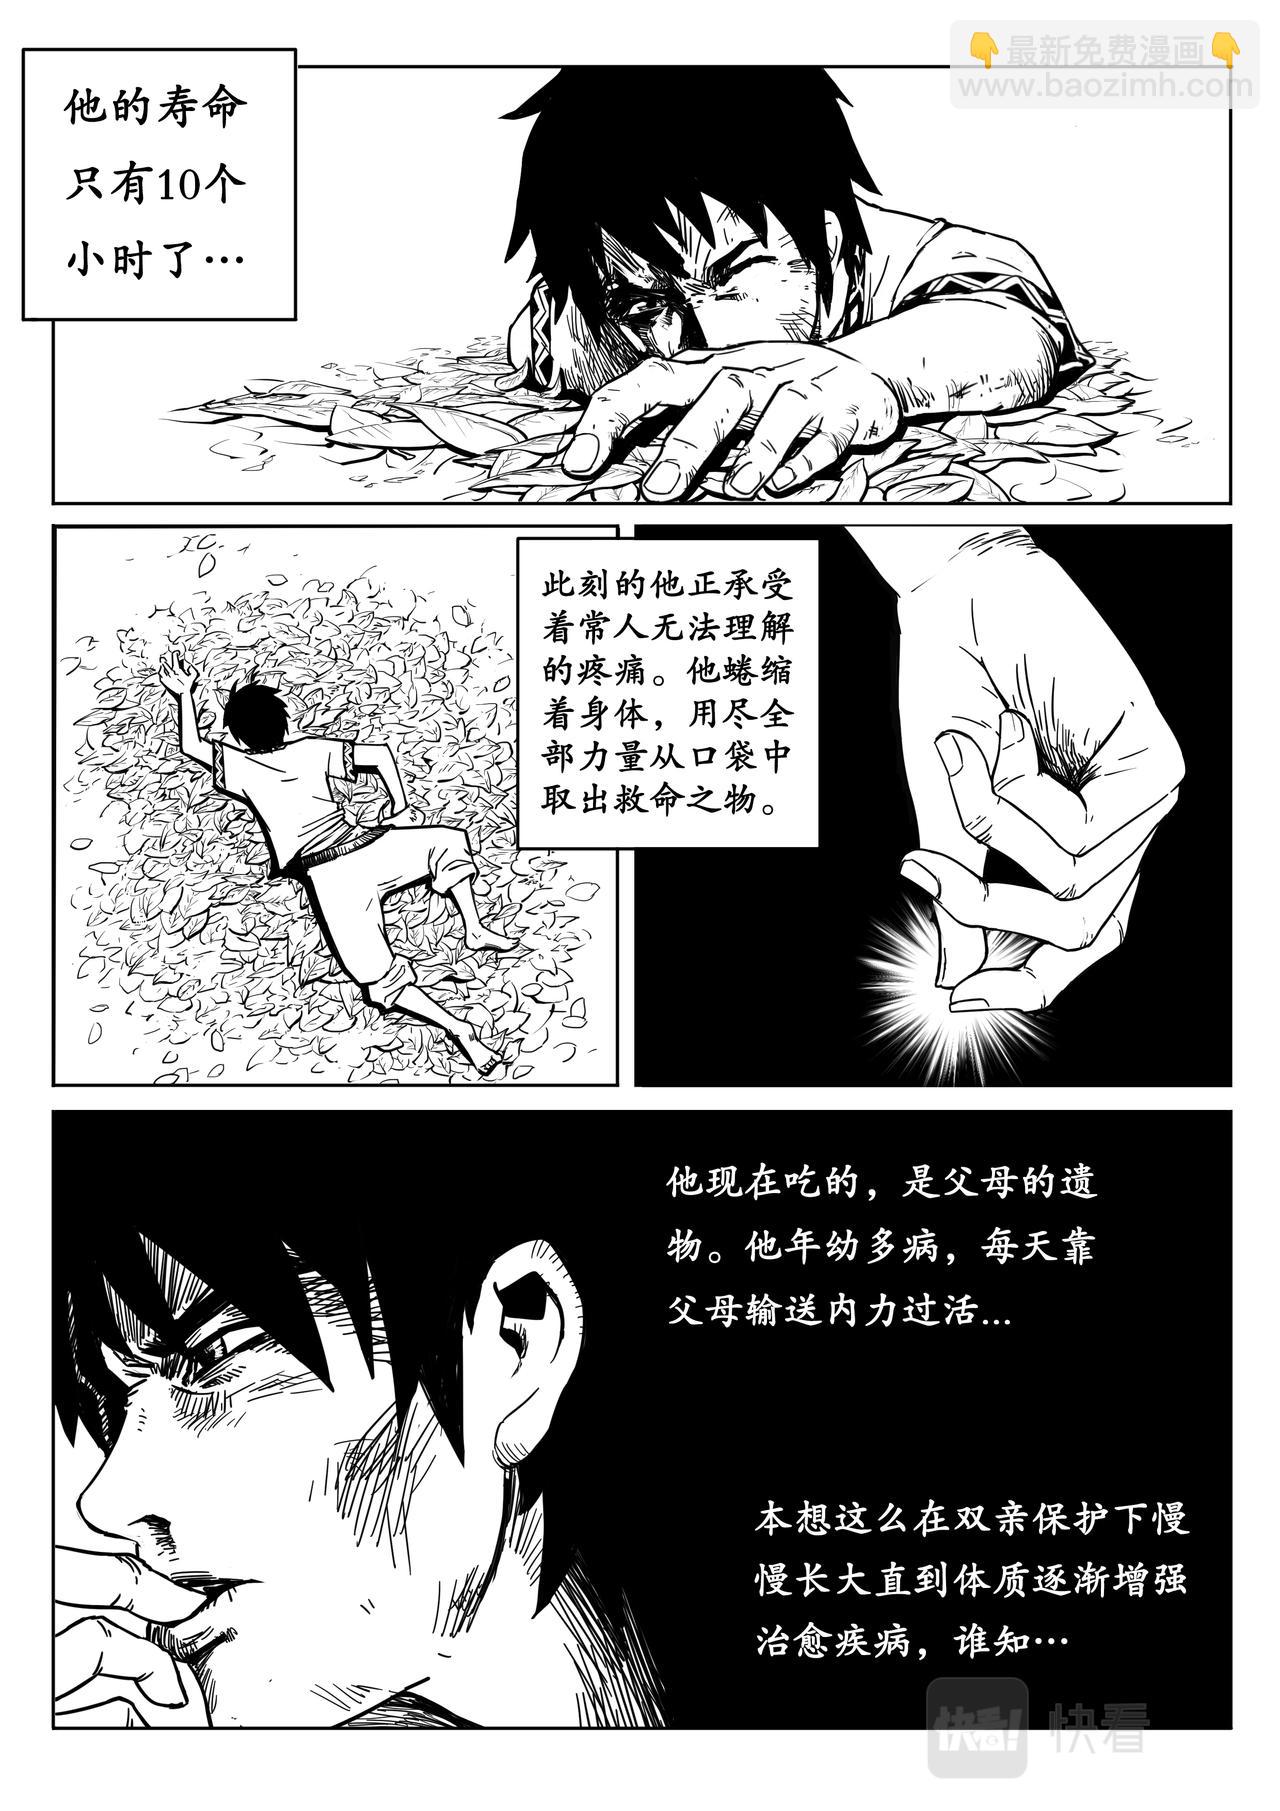 常盤勇者 - 05-少年漫畫篇02 - 2